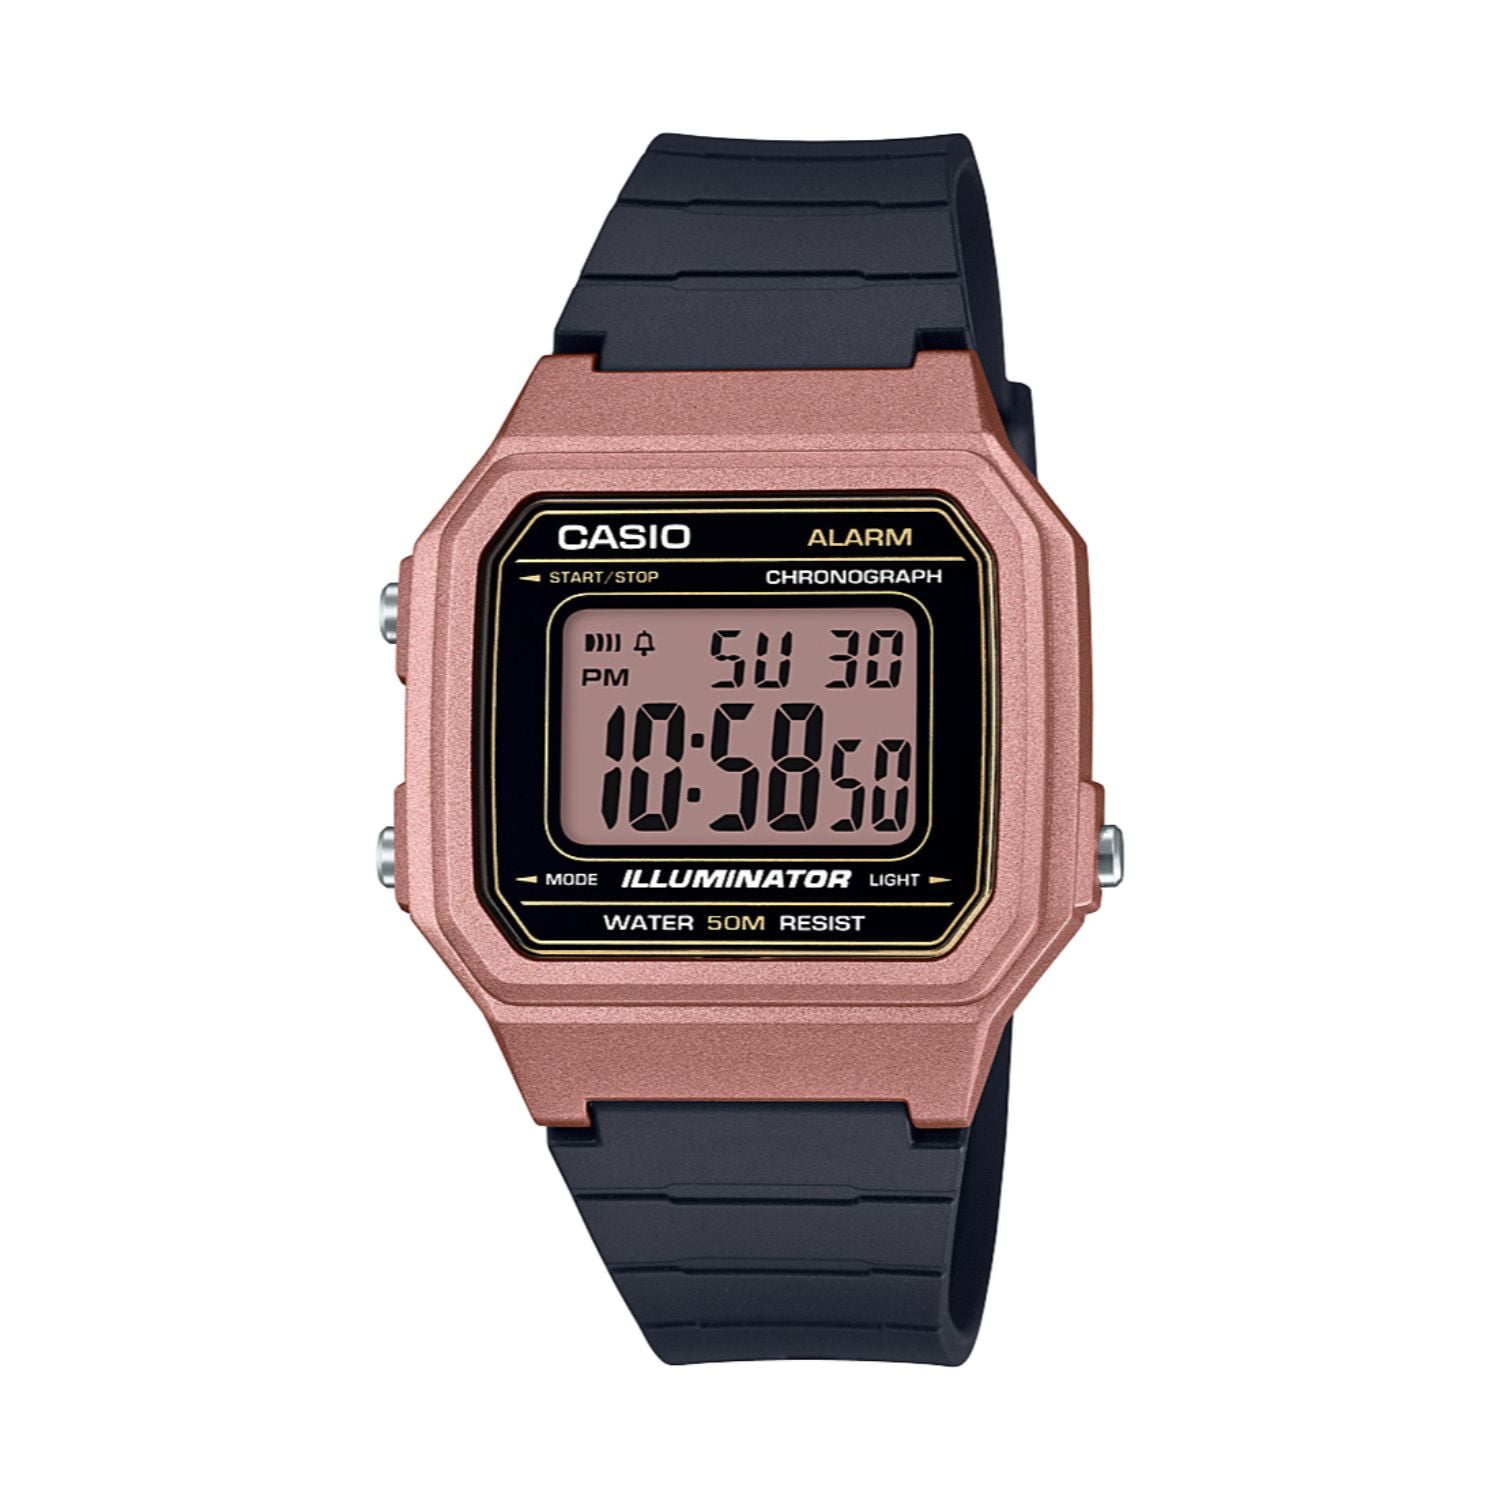 ladrón persuadir exposición Casio Men's Classic Digital Watch, Rose Gold/Black W217HM-5AV - Walmart.com